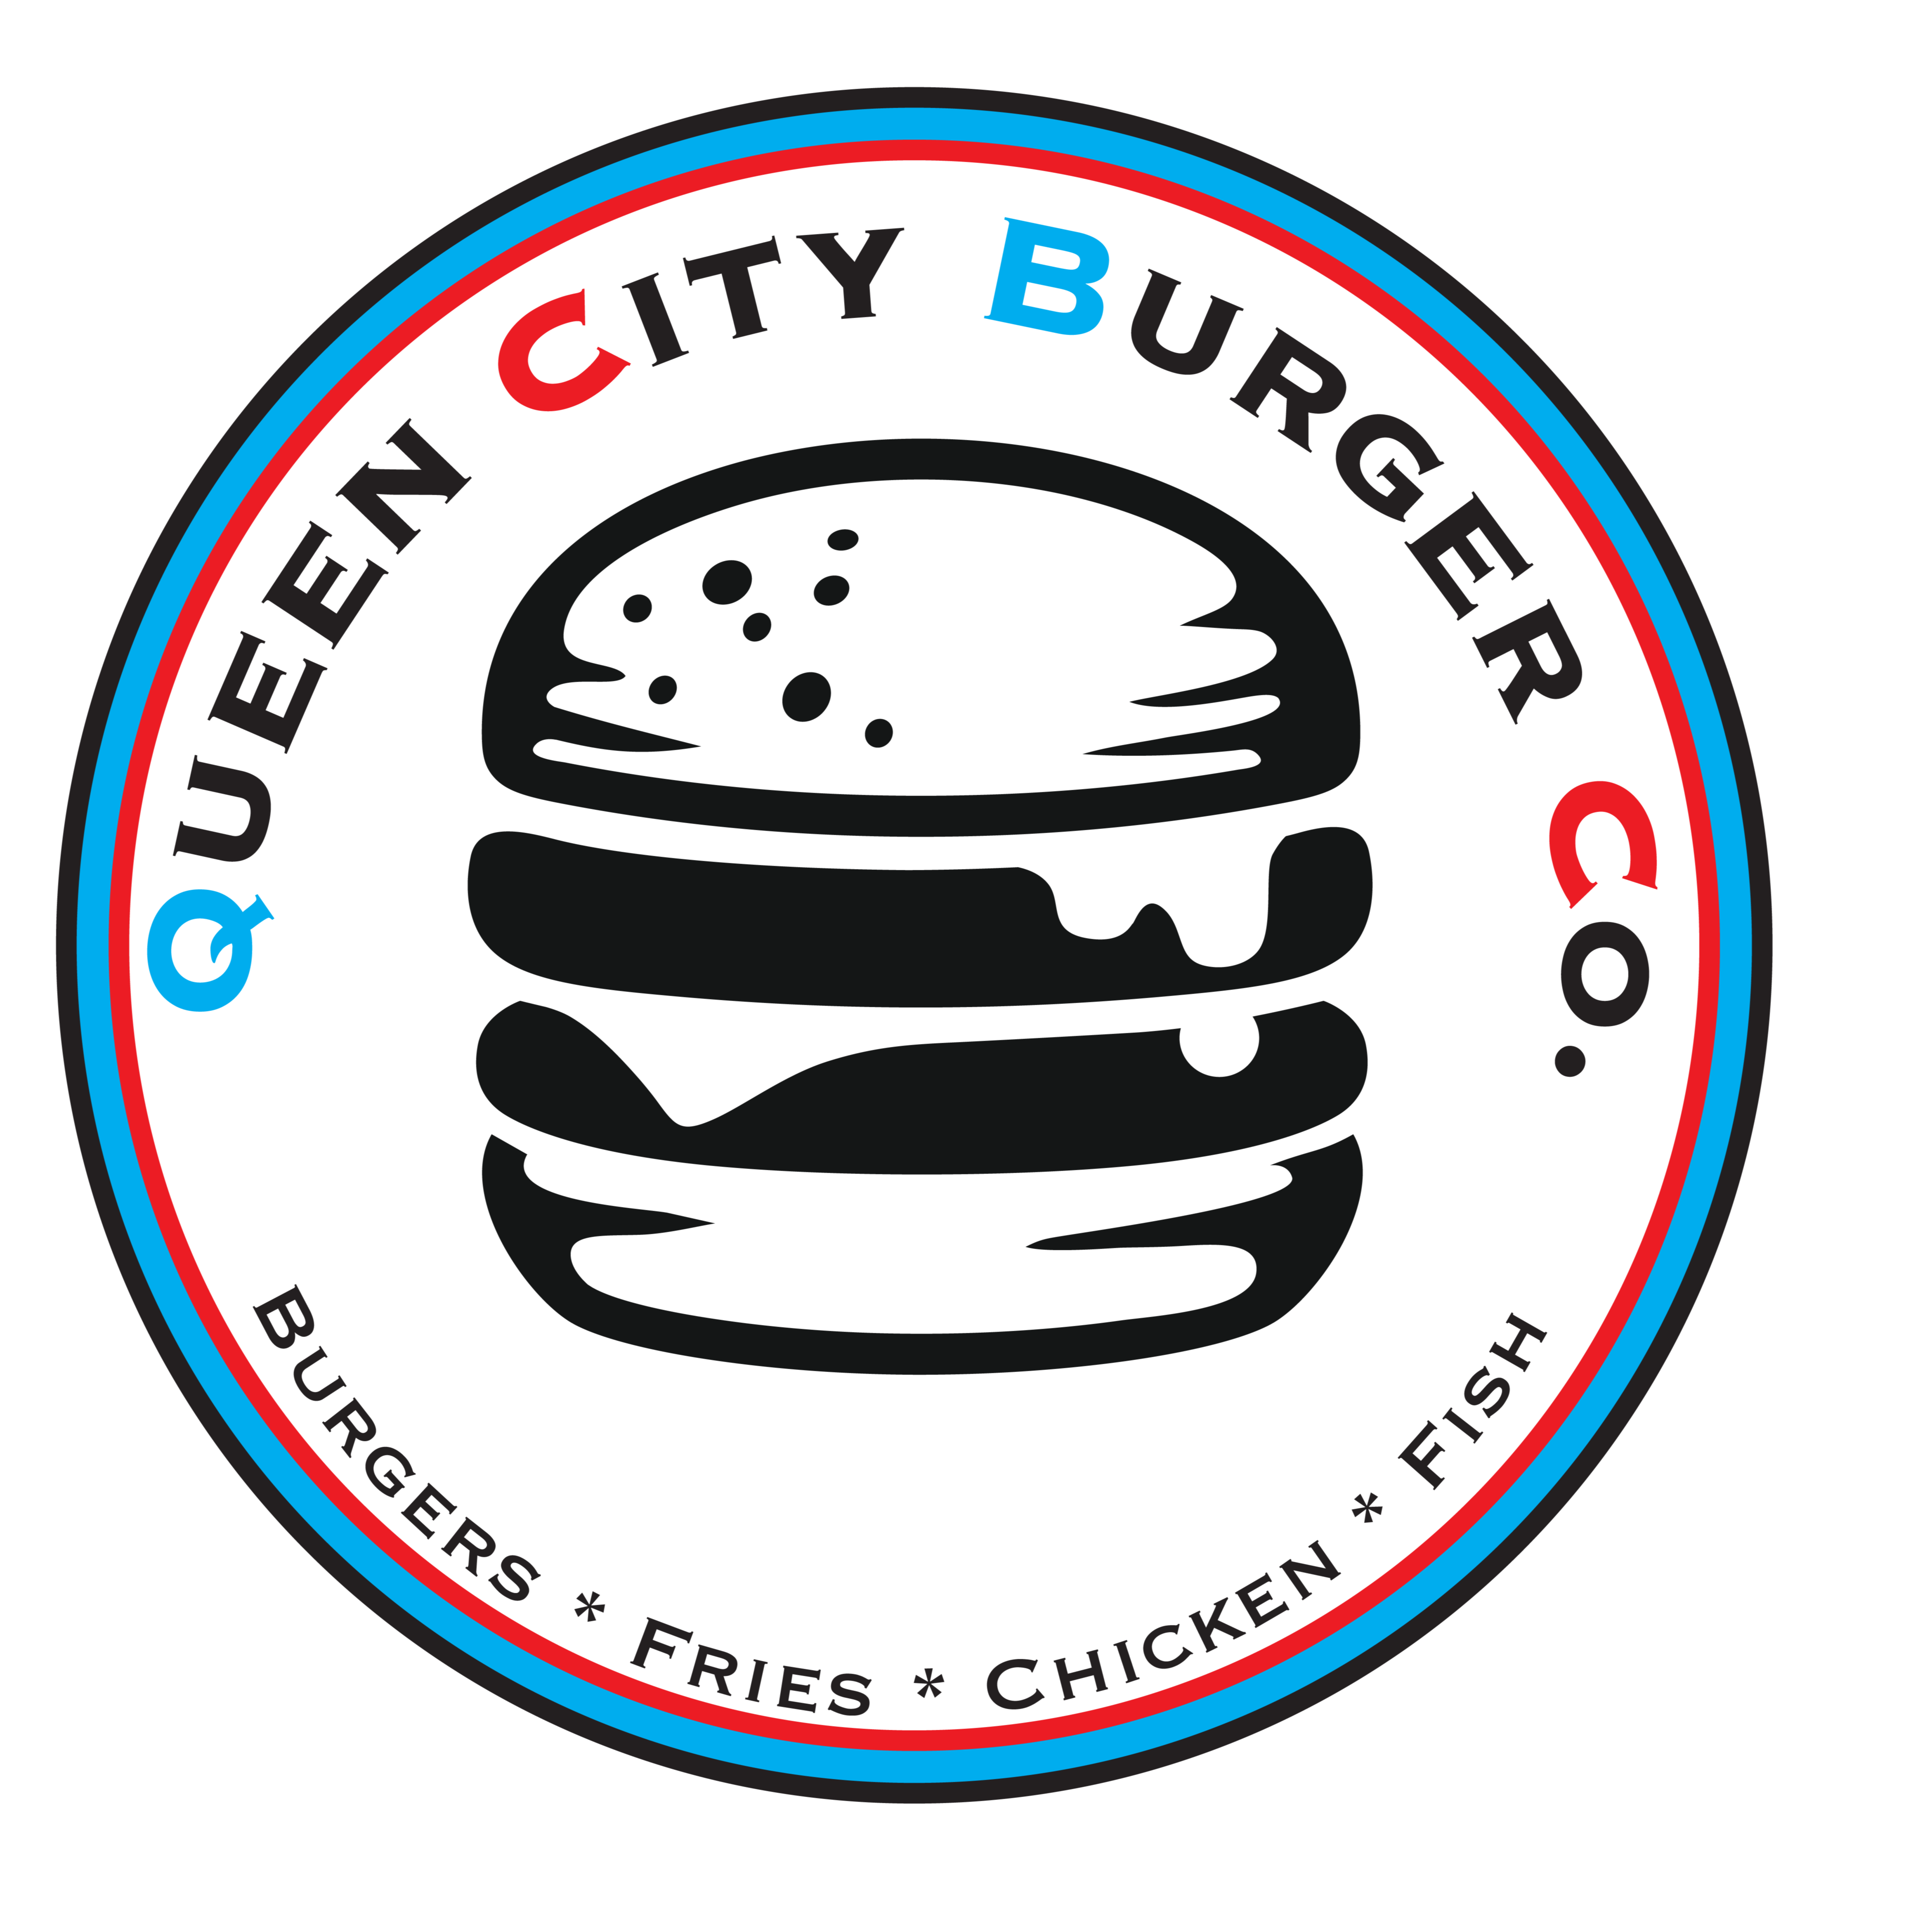 Queen City Burger Company